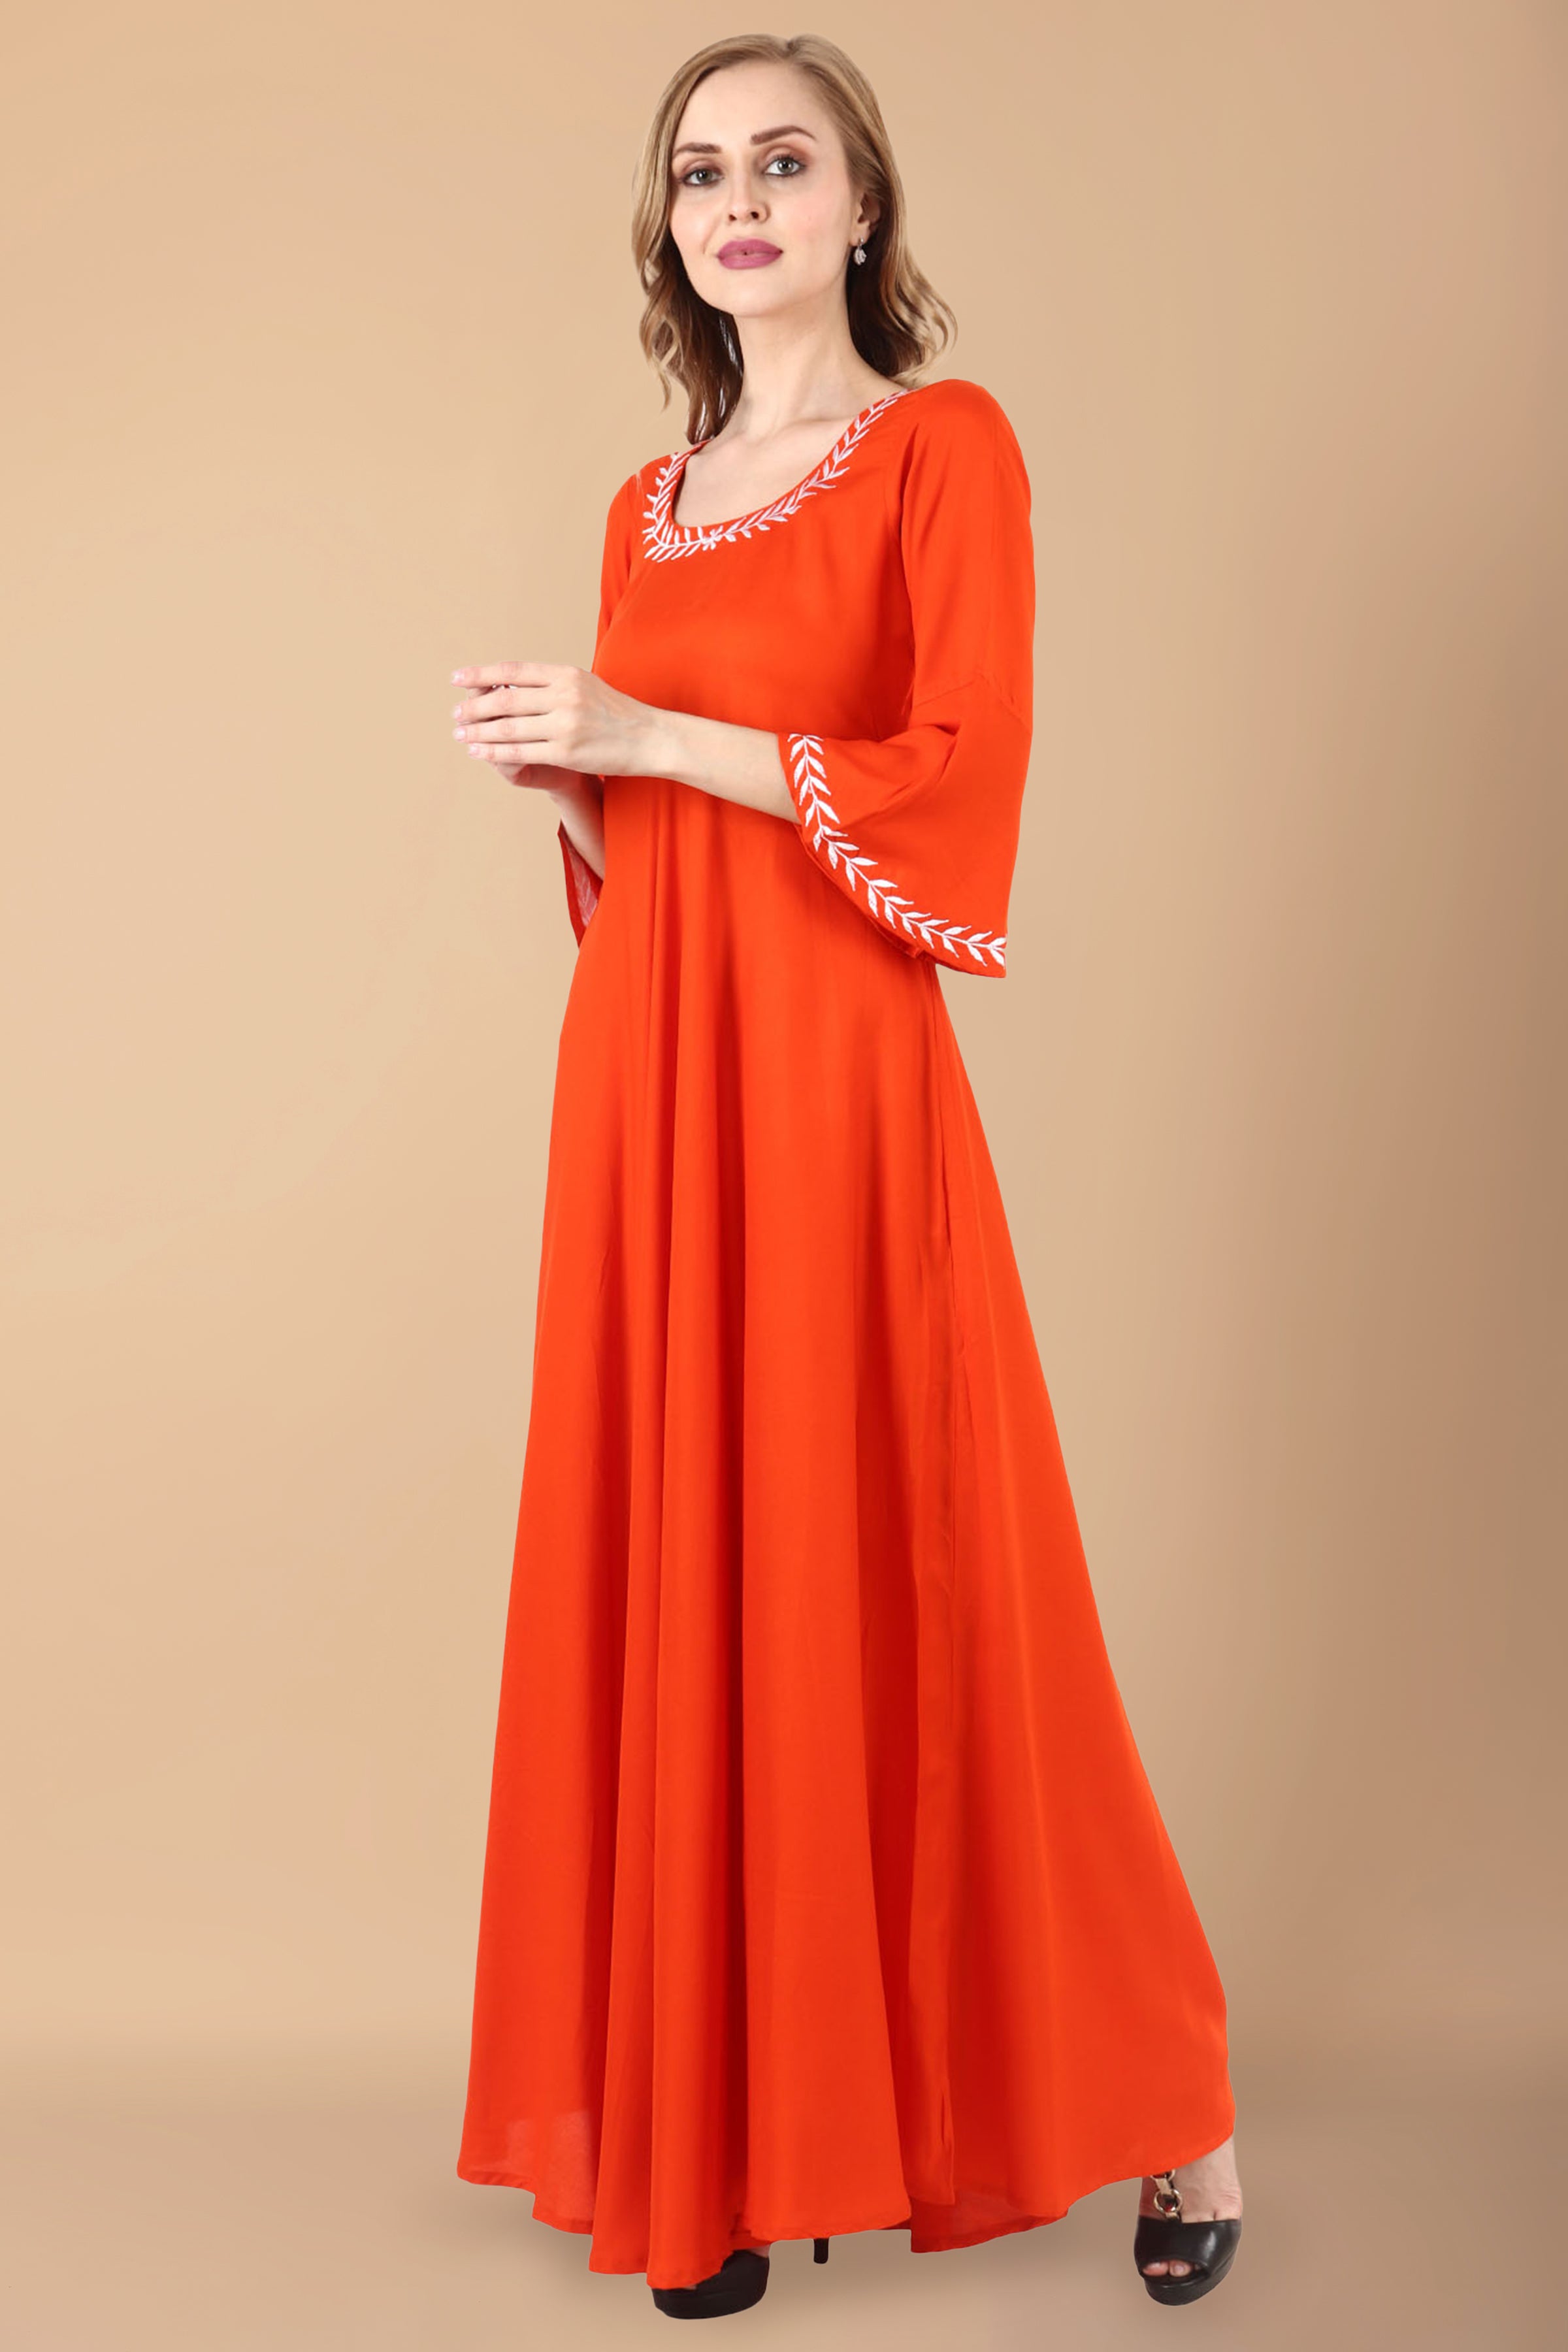 Buy Daisy Orange Gown for Little Girls Online - ForeverKidz